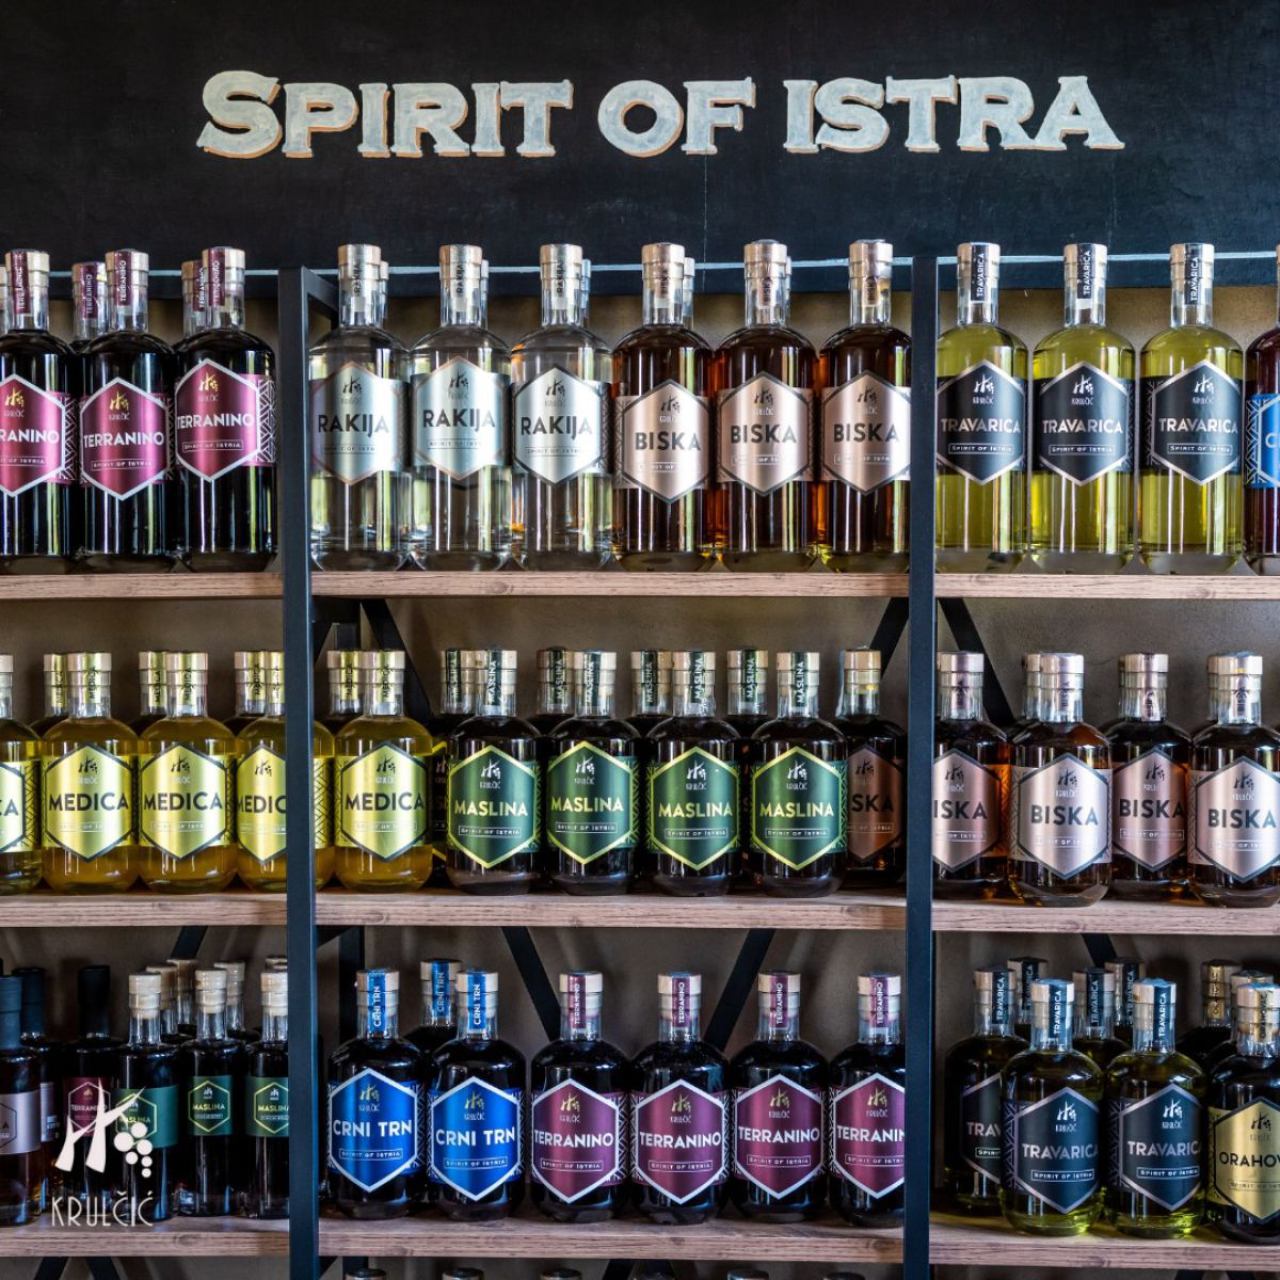 Spirit of Istra